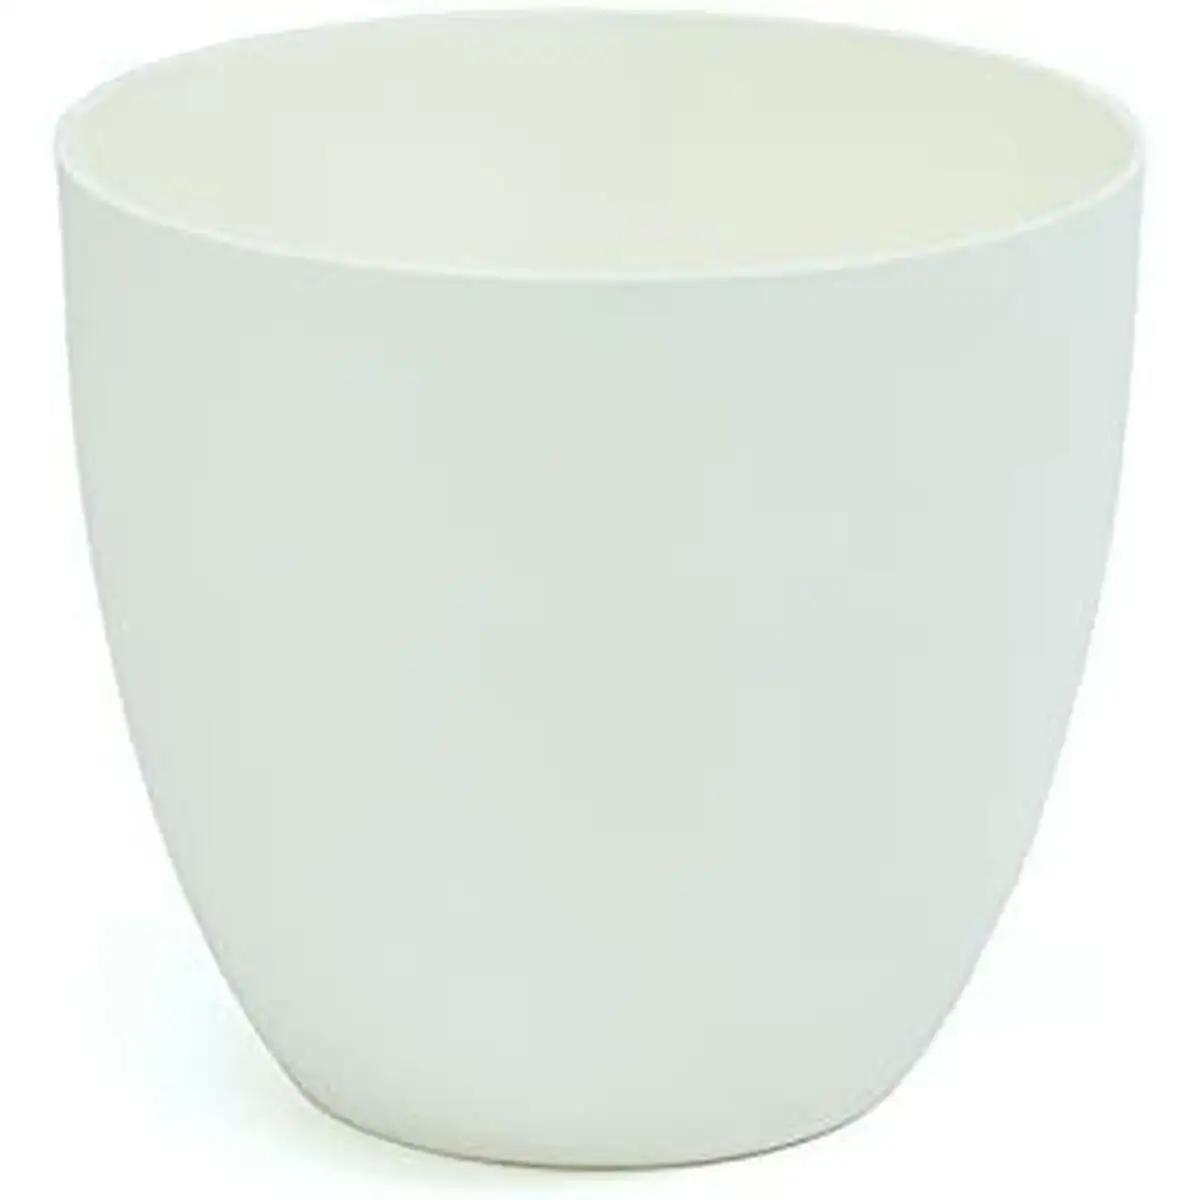 Pot plastiken 8426 blanc polypropylene o 26 cm _9574. DIAYTAR SENEGAL - Là où Chaque Produit est une Trouvaille Unique. Découvrez notre boutique en ligne et trouvez des articles qui vous distinguent par leur originalité.